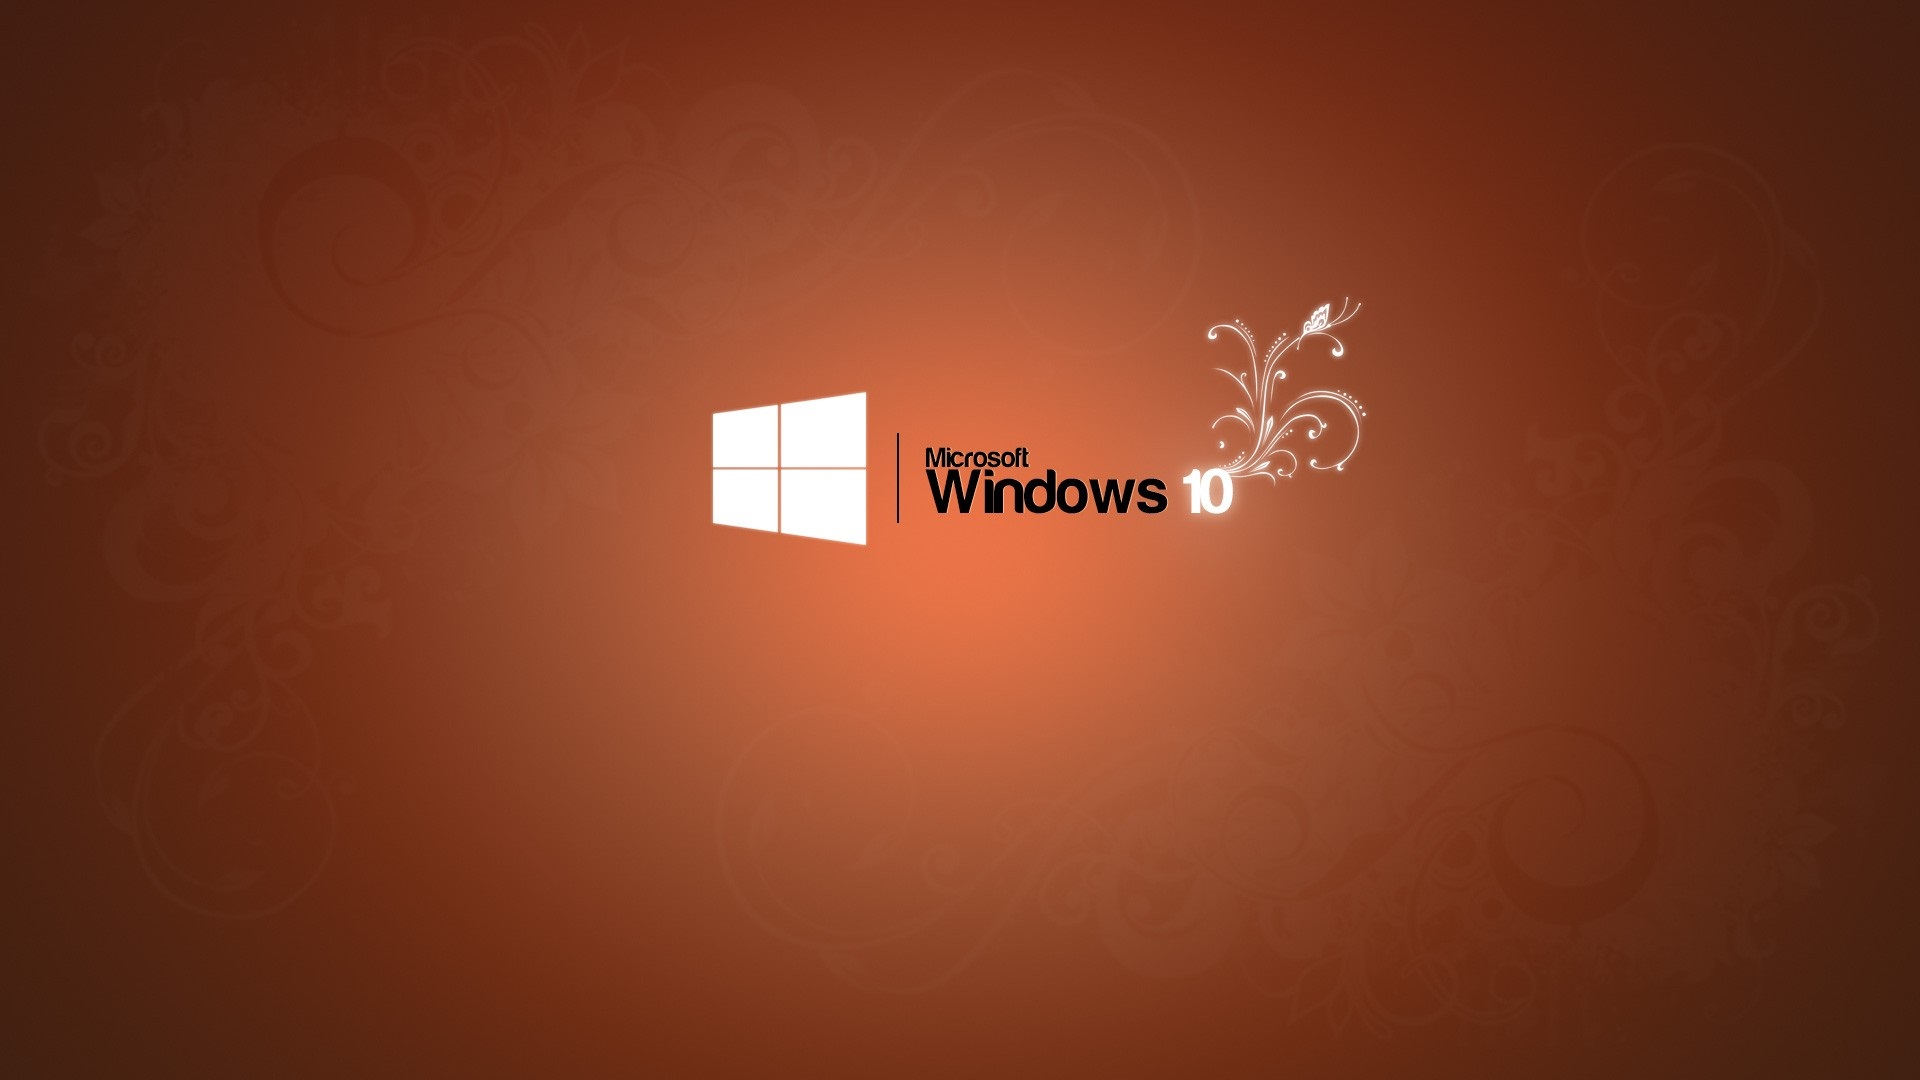 Windows 10-1920x1080.jpg